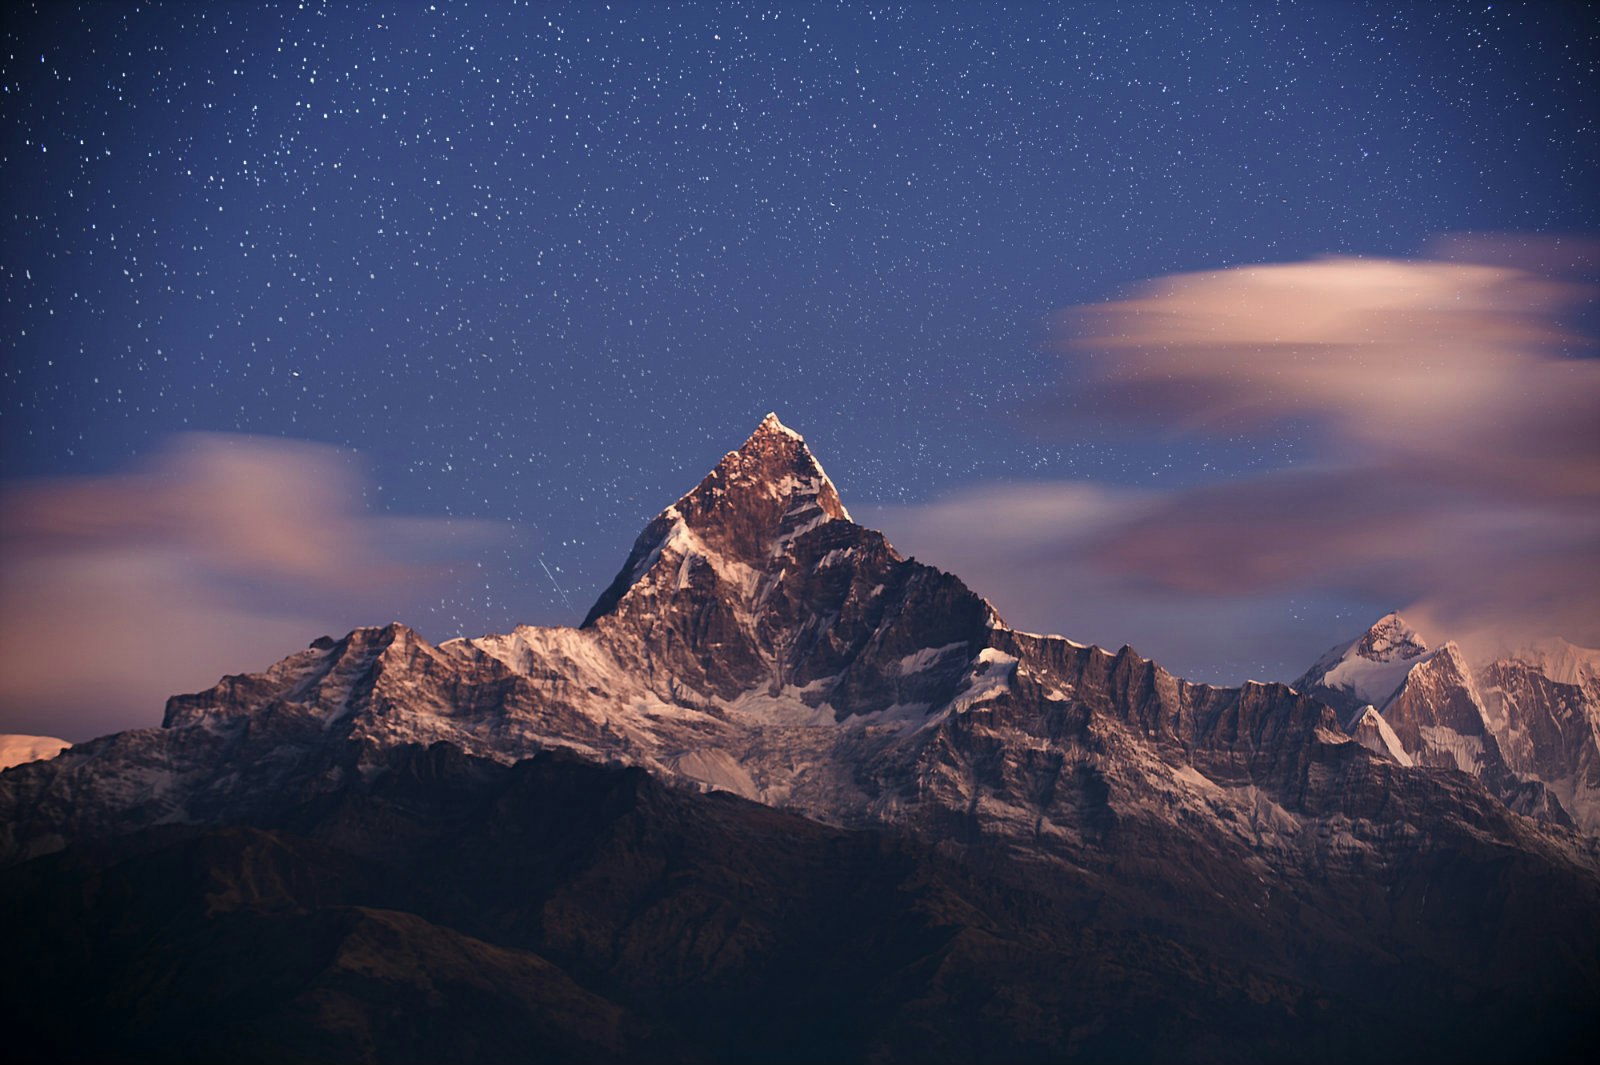 Sarangkot, Nepal © Piyaphon Phemtaweepon / Getty Images